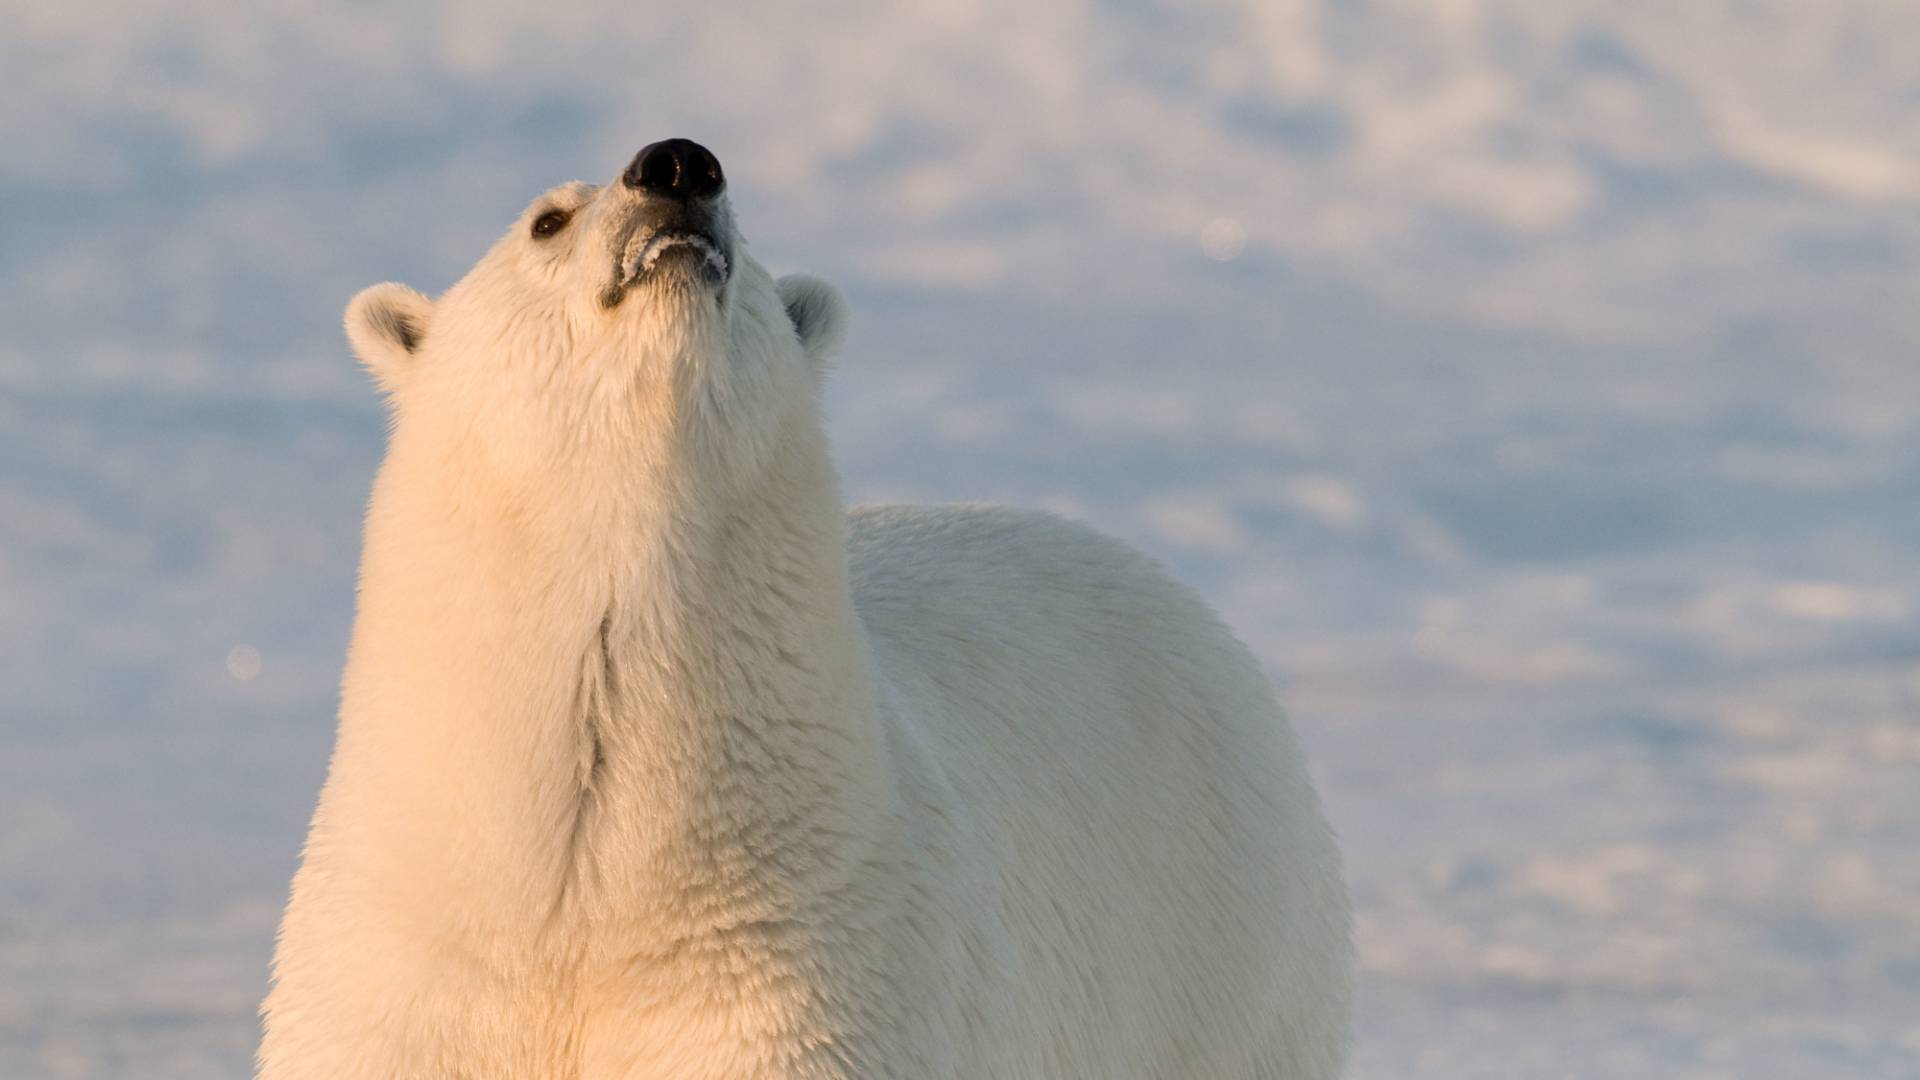 Orso polare con il suo naso